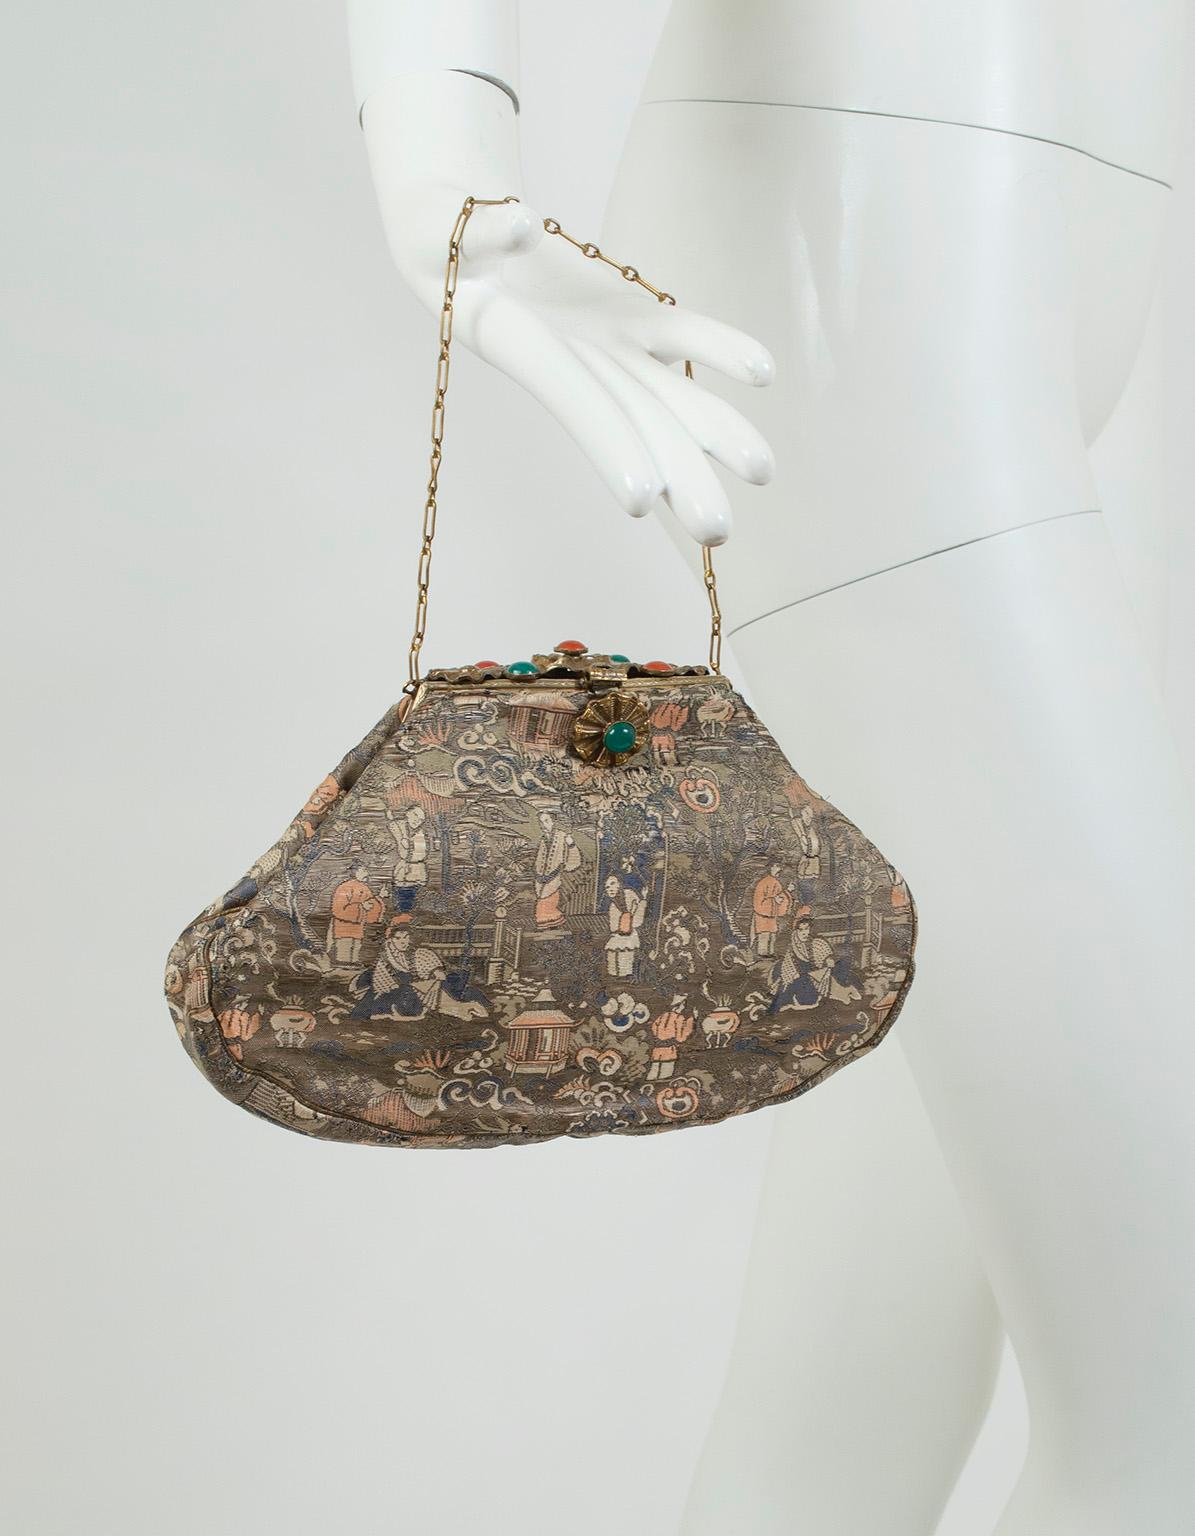 Diese exquisite Seidenhandtasche besticht durch ein gedämpftes Chinoiserie-Motiv, das für sich genommen schon bemerkenswert wäre, würde es nicht durch den einzigartigen Deckel aus strukturiertem Messing in den Schatten gestellt, der wie eine starre